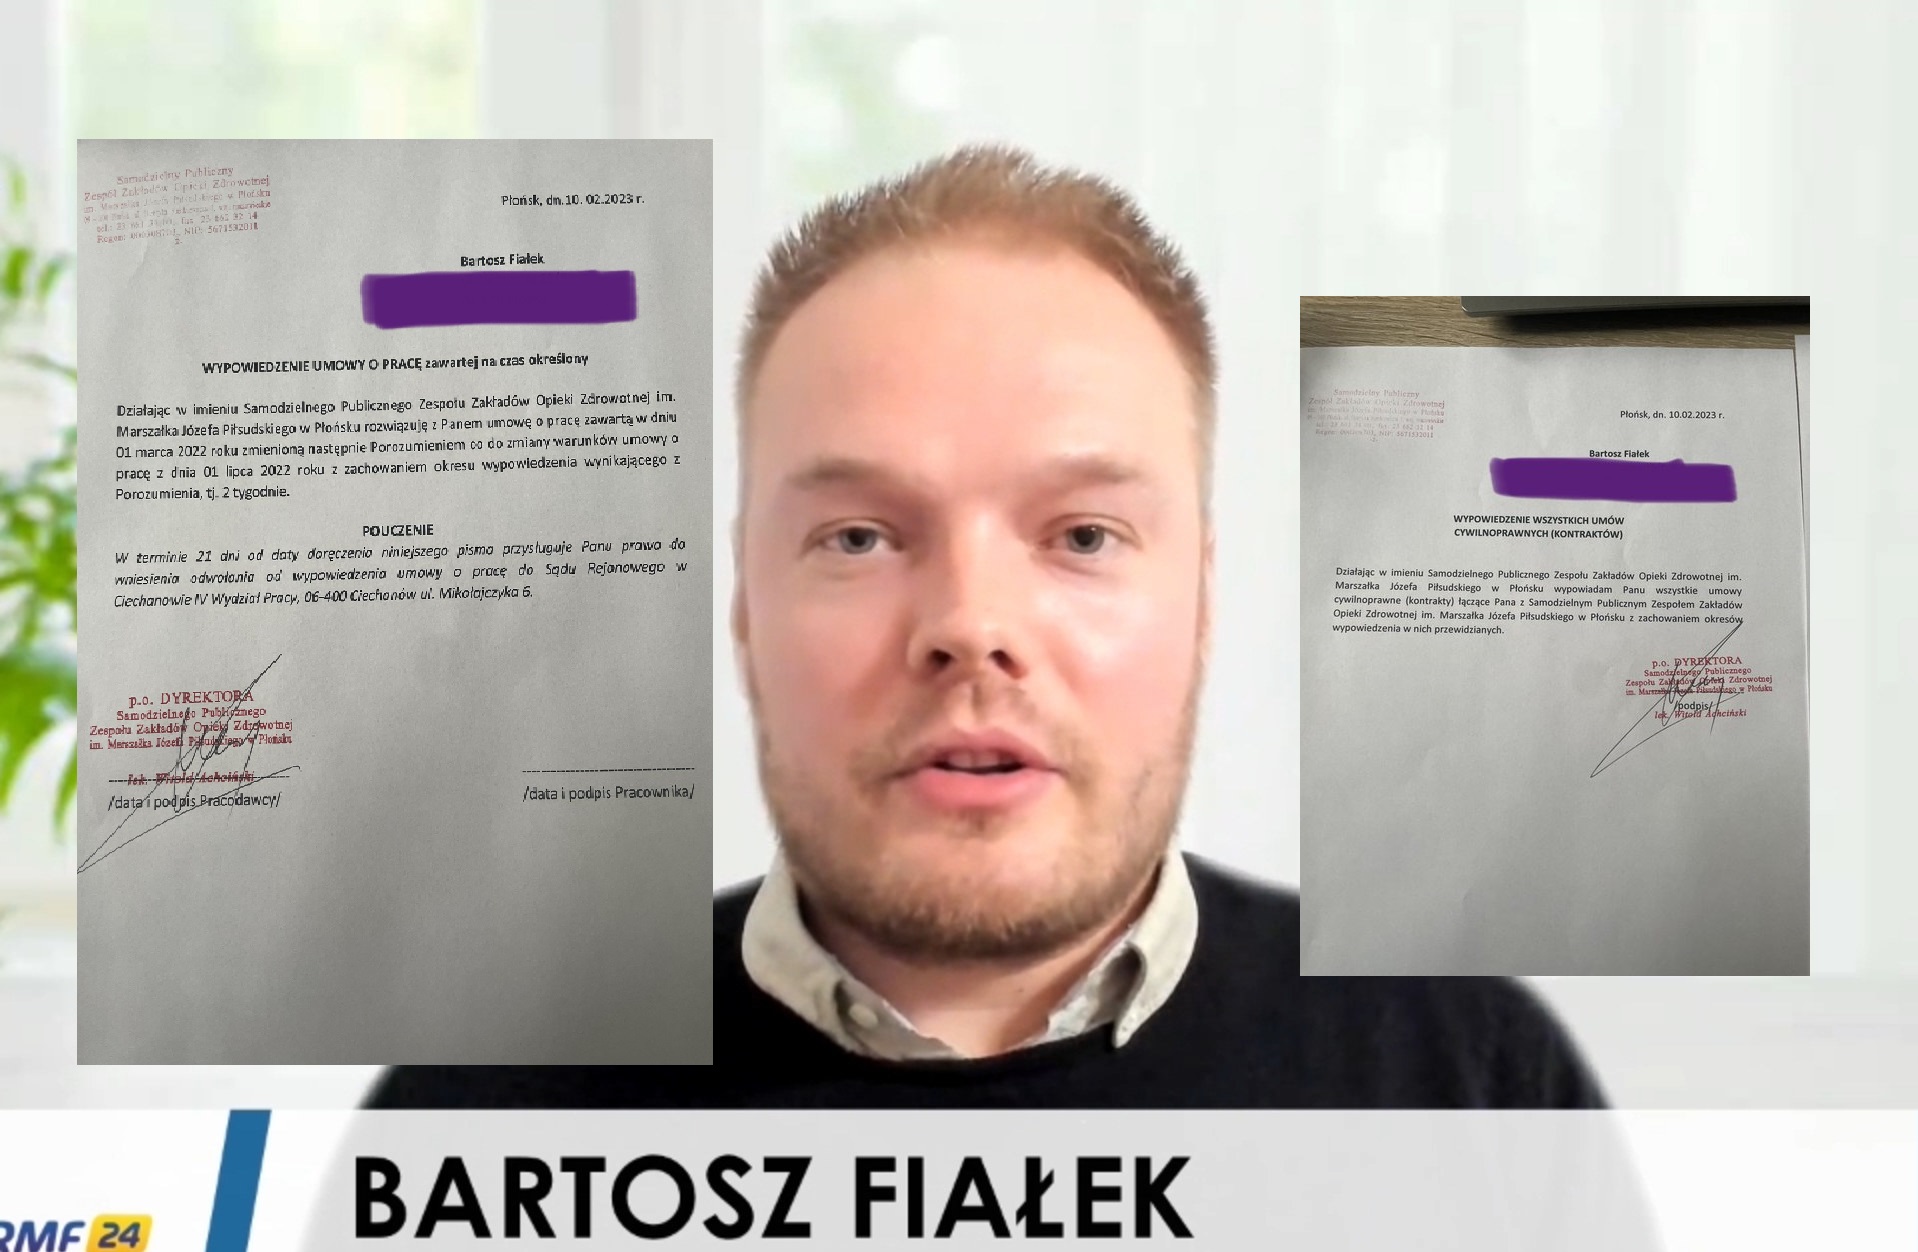 Szpital zwalnia z pracy wielkiego celebrytę covidowego Bartosza Fiałka.